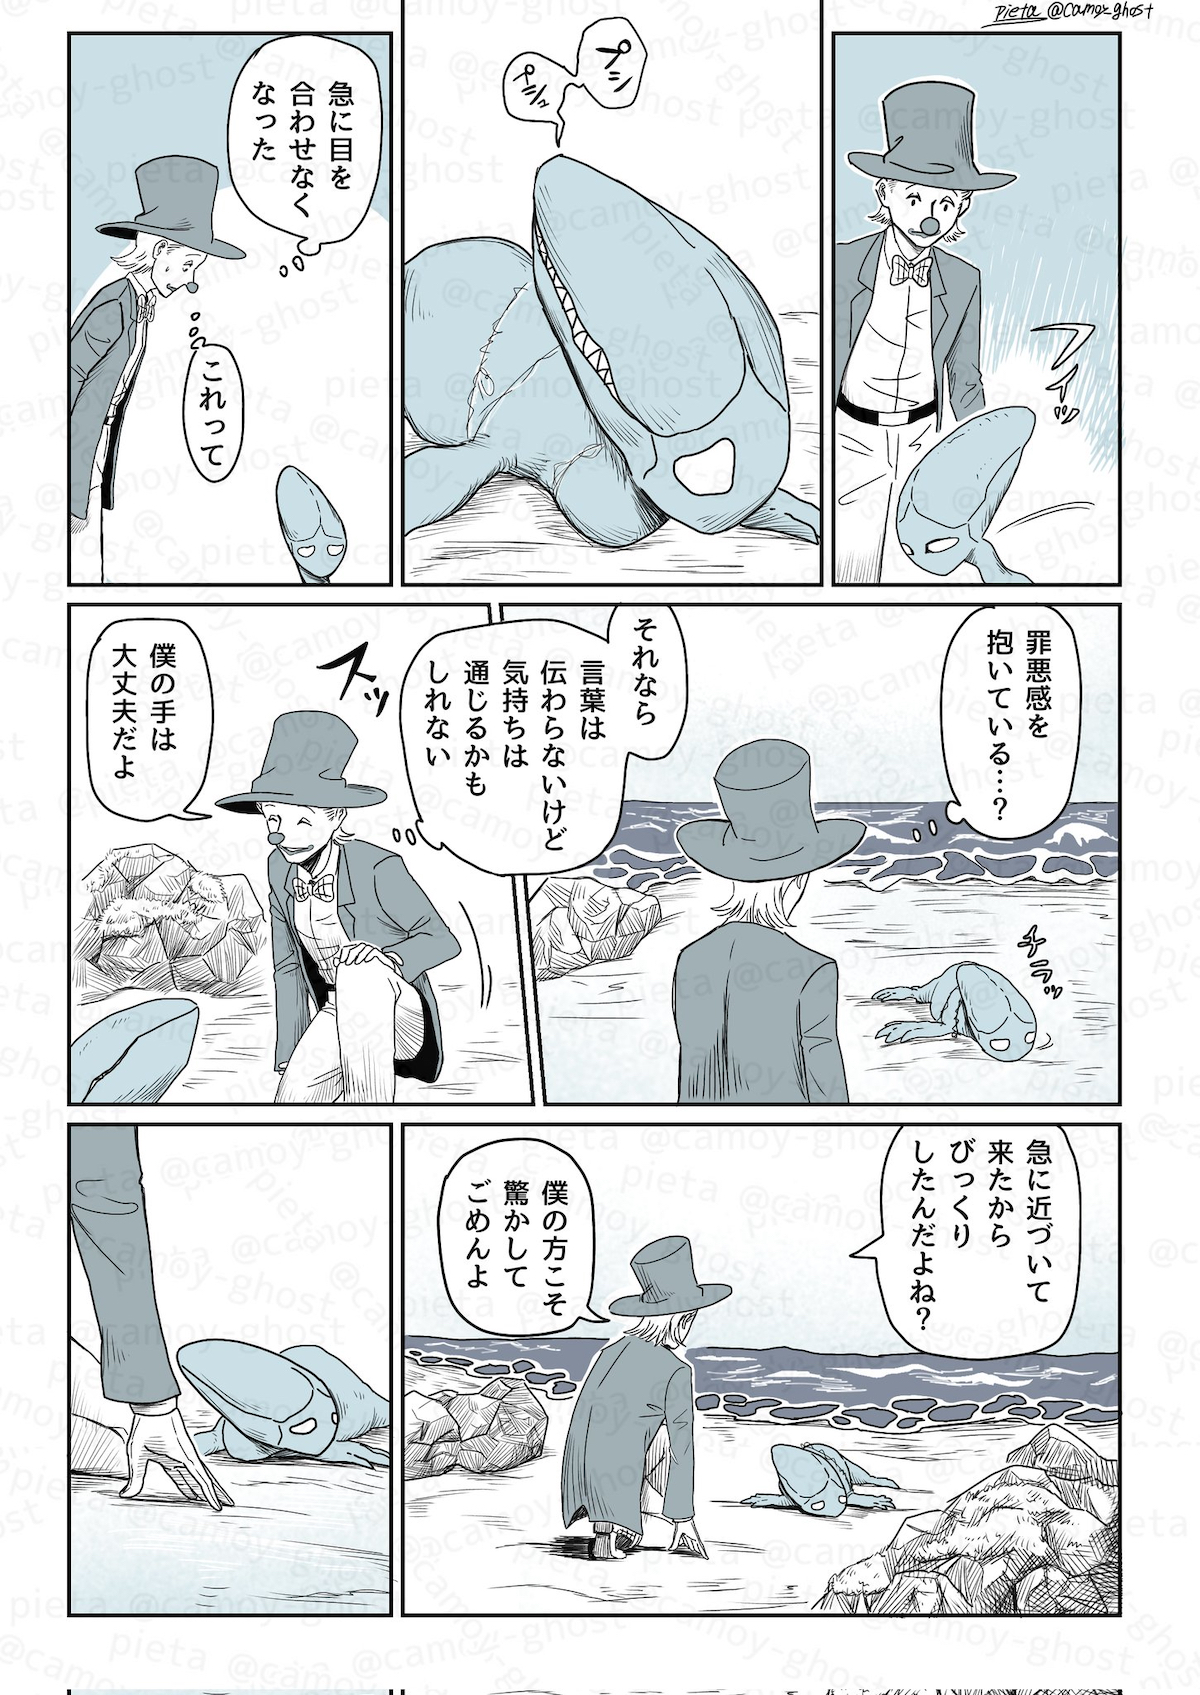 【漫画】『セルキーの浜辺』が面白いの画像